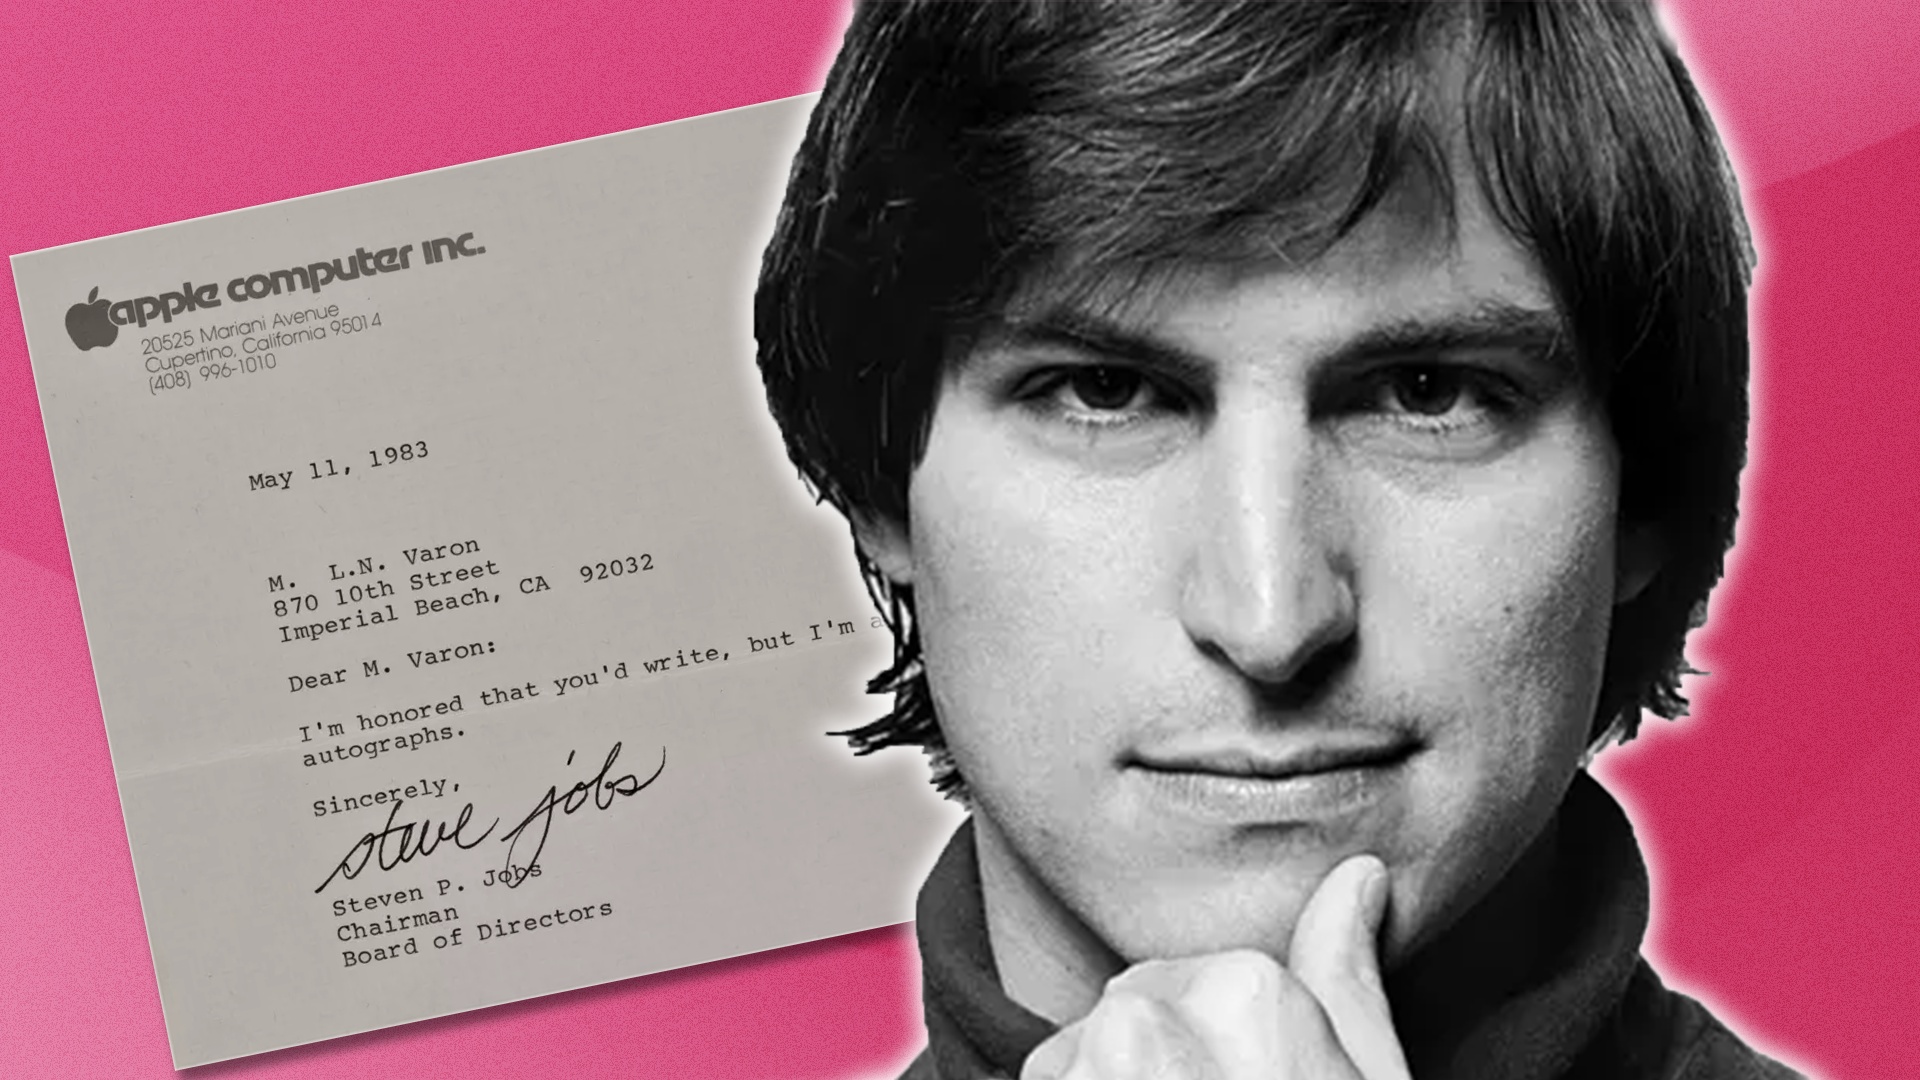 #Ein schelmischer Brief von Apple-Ikone Steve Jobs erweist sich nach vielen Jahren als verflucht wertvoll